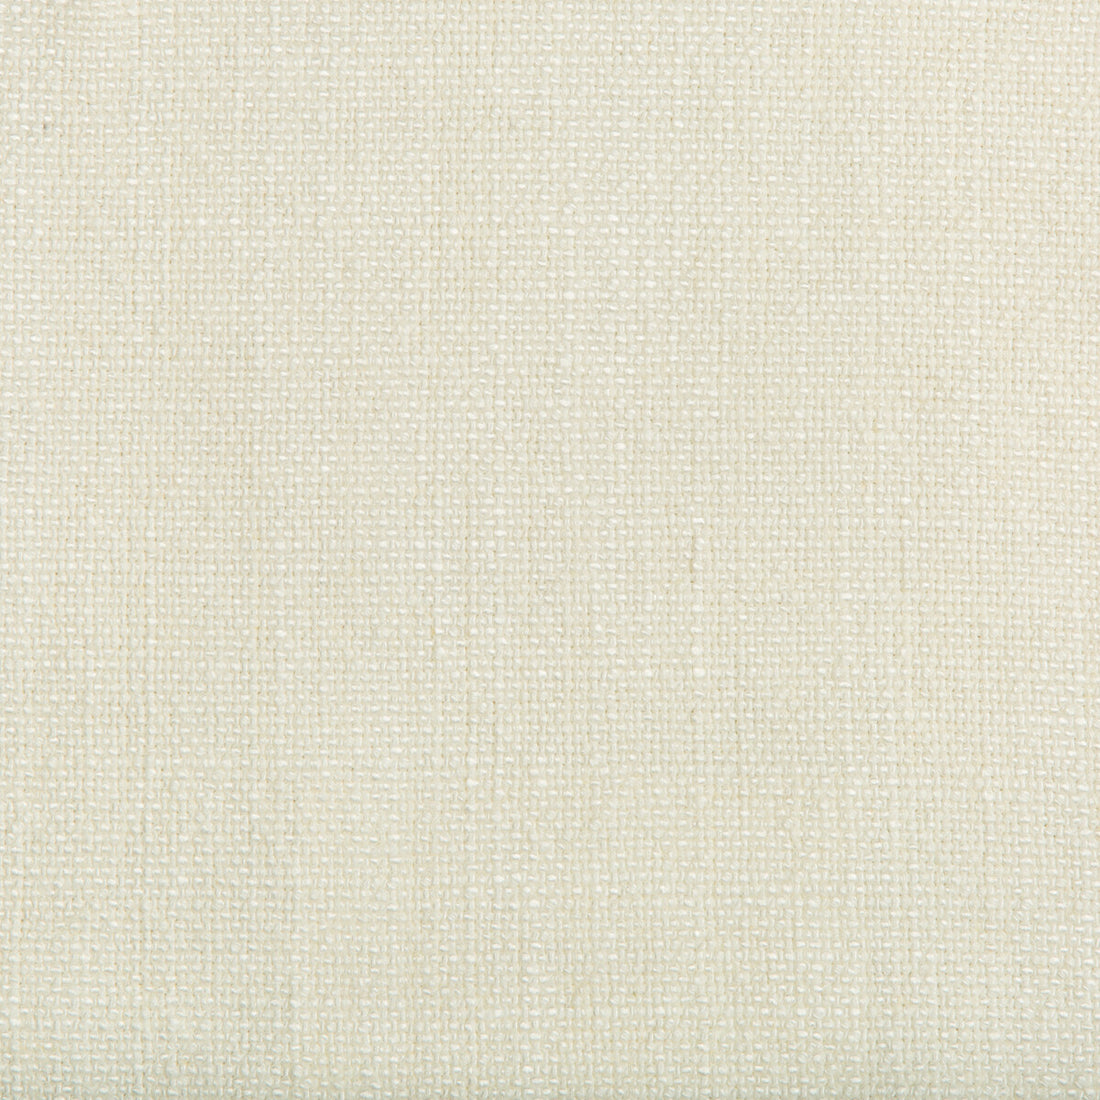 Kravet Basics fabric in 35189-111 color - pattern 35189.111.0 - by Kravet Basics